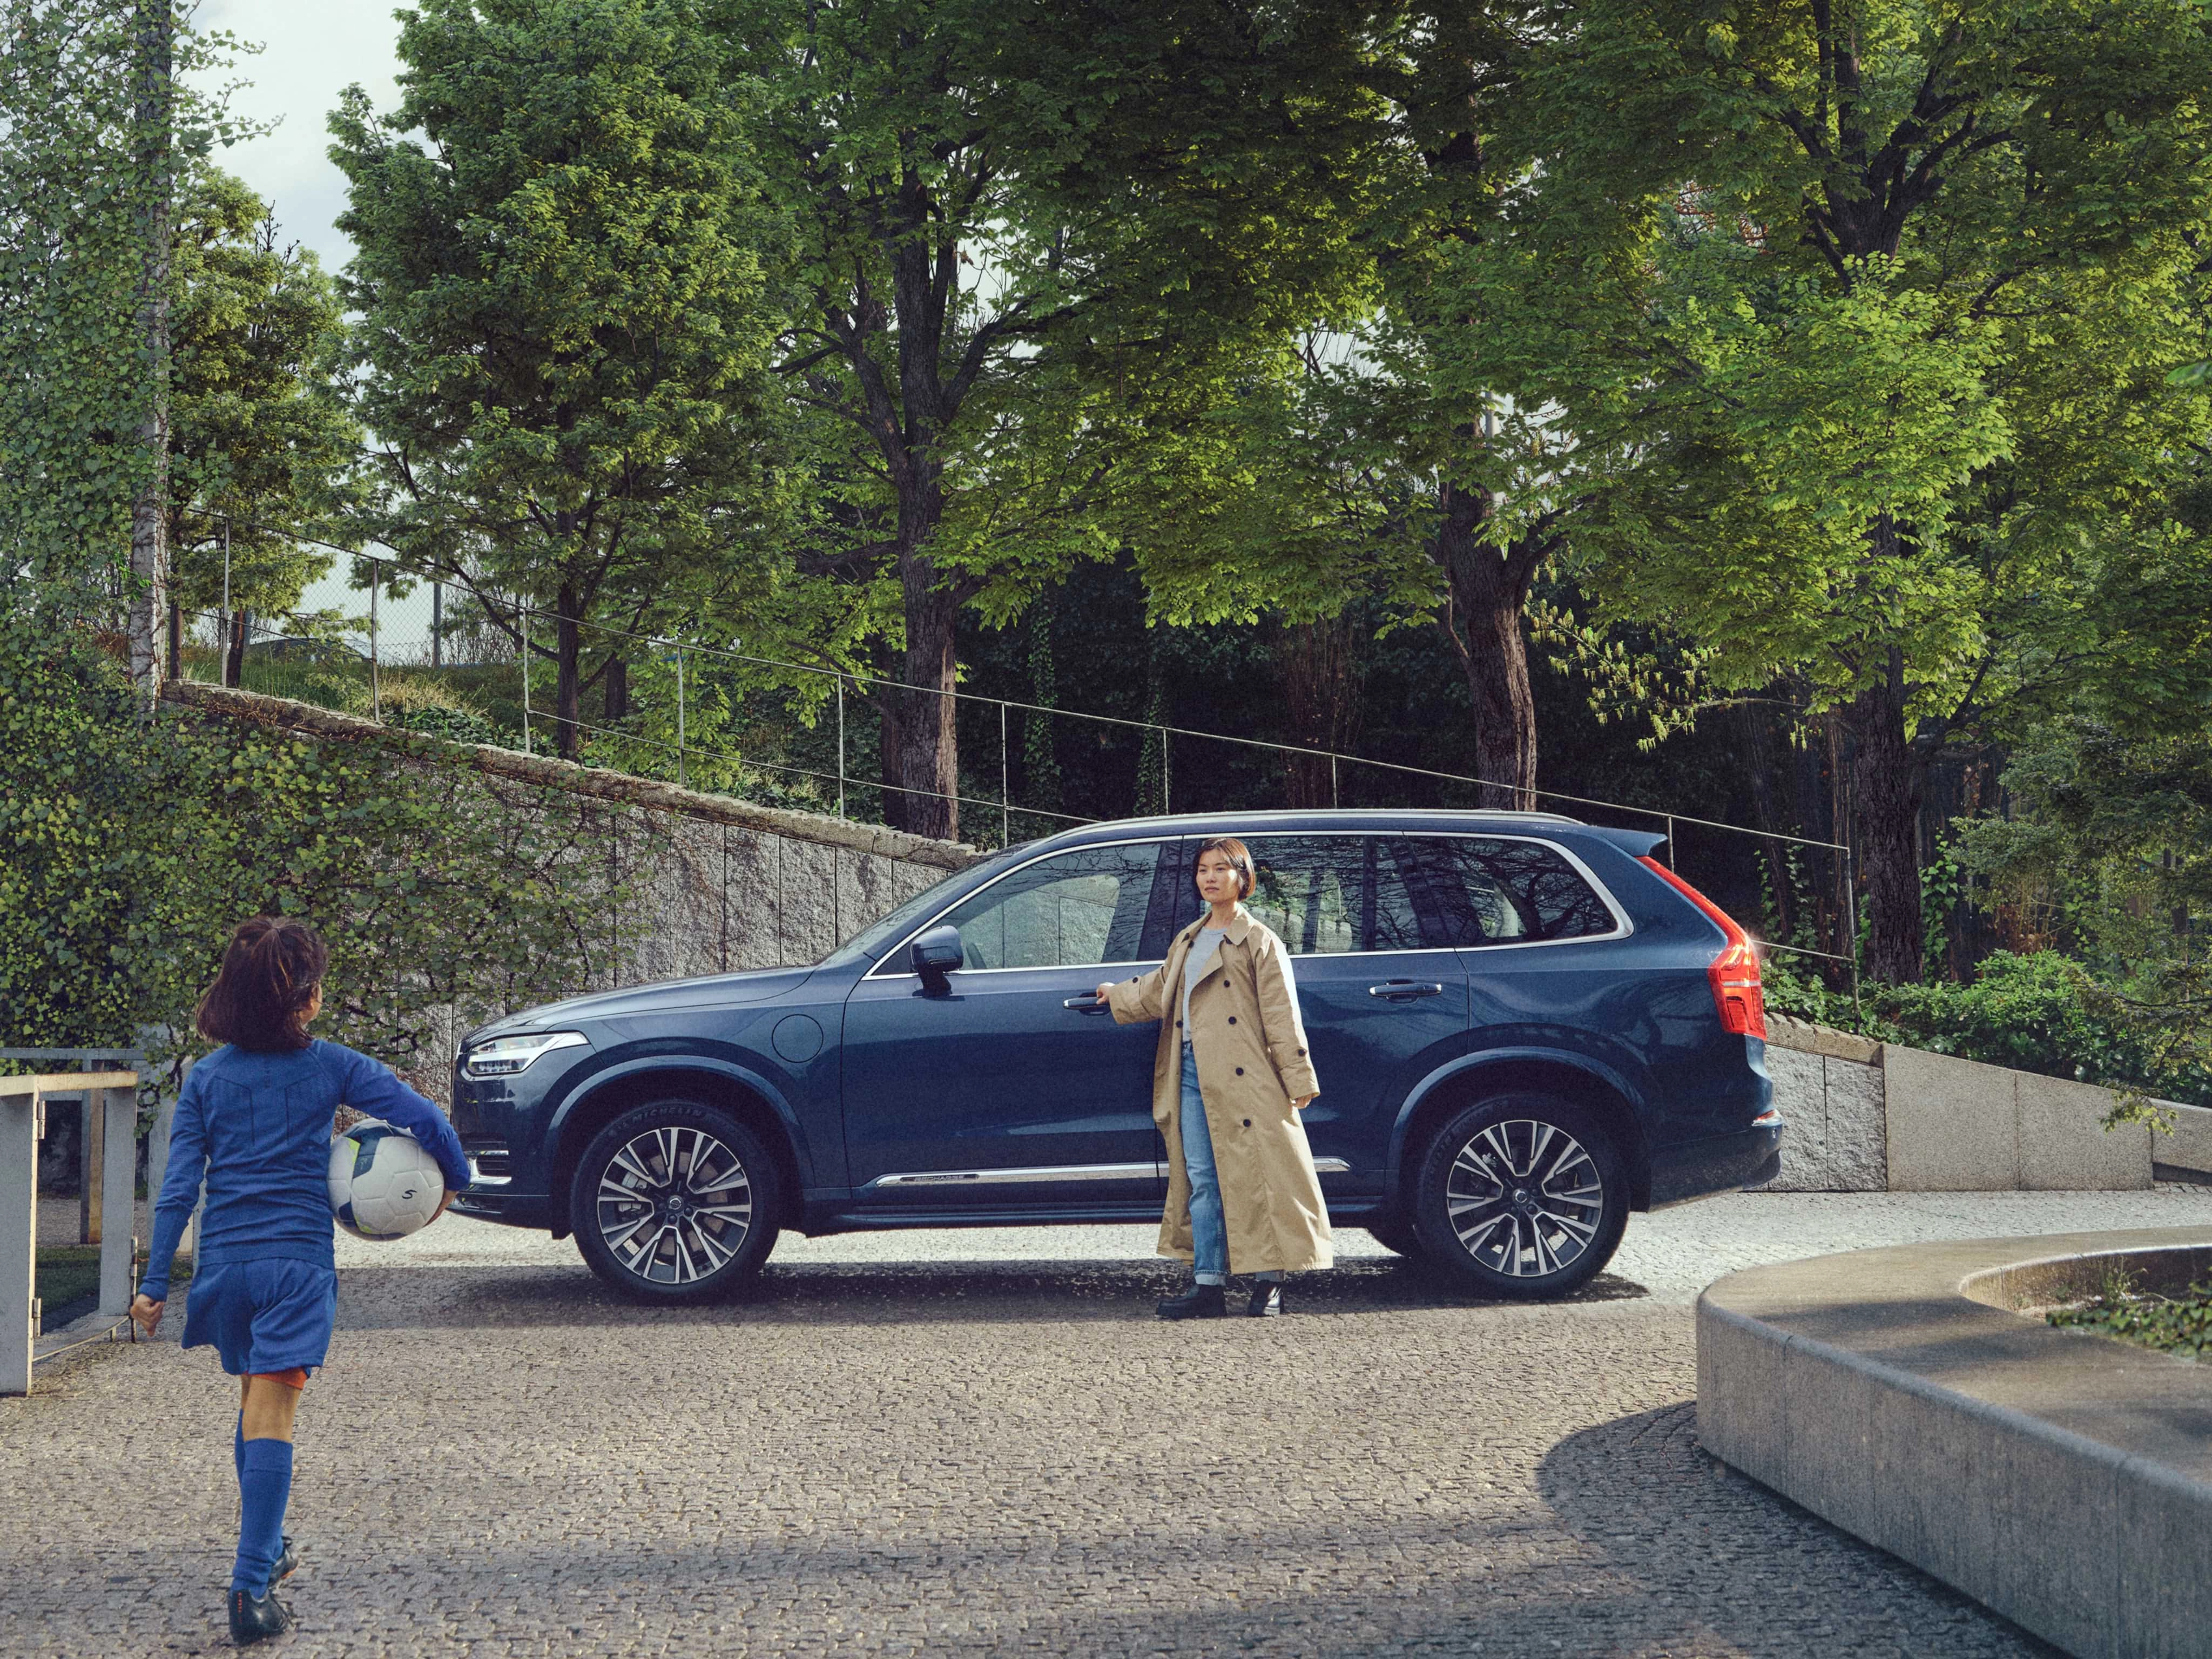 Majka stoji blizu svog automobila Volvo XC90 u boji Denim Blue dok joj kćerka, obučena za fudbalski trening, prilazi i drži loptu.